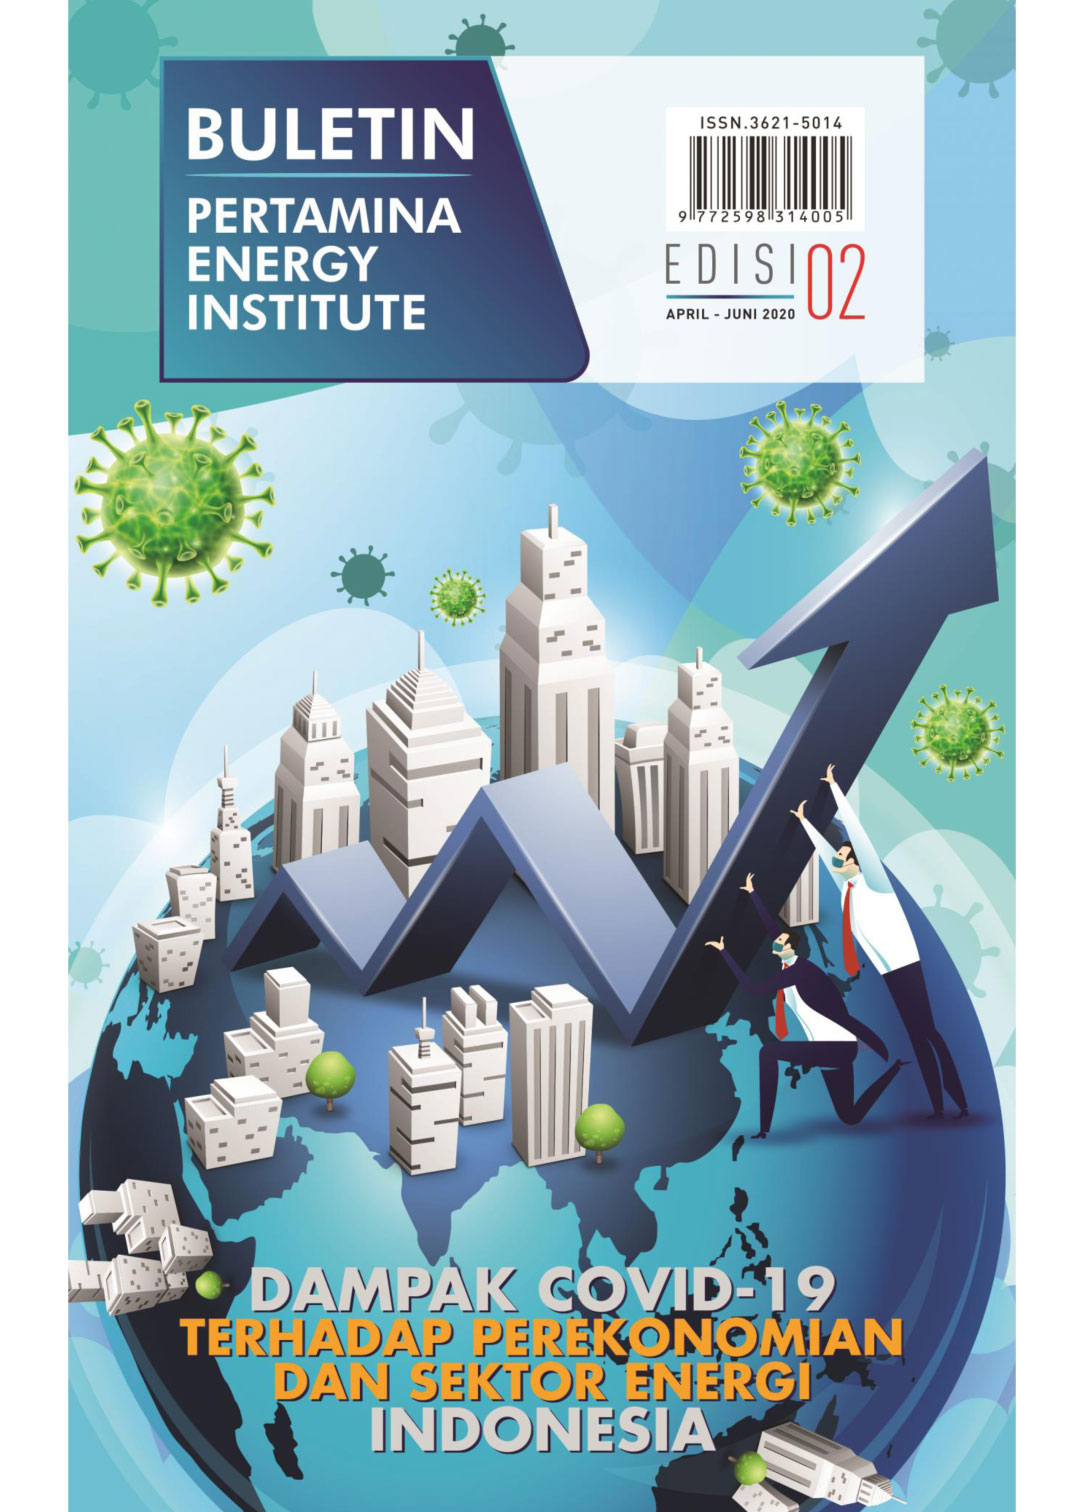 Pertamina Energy Institute - Edisi 02 (April - Juni 2020)